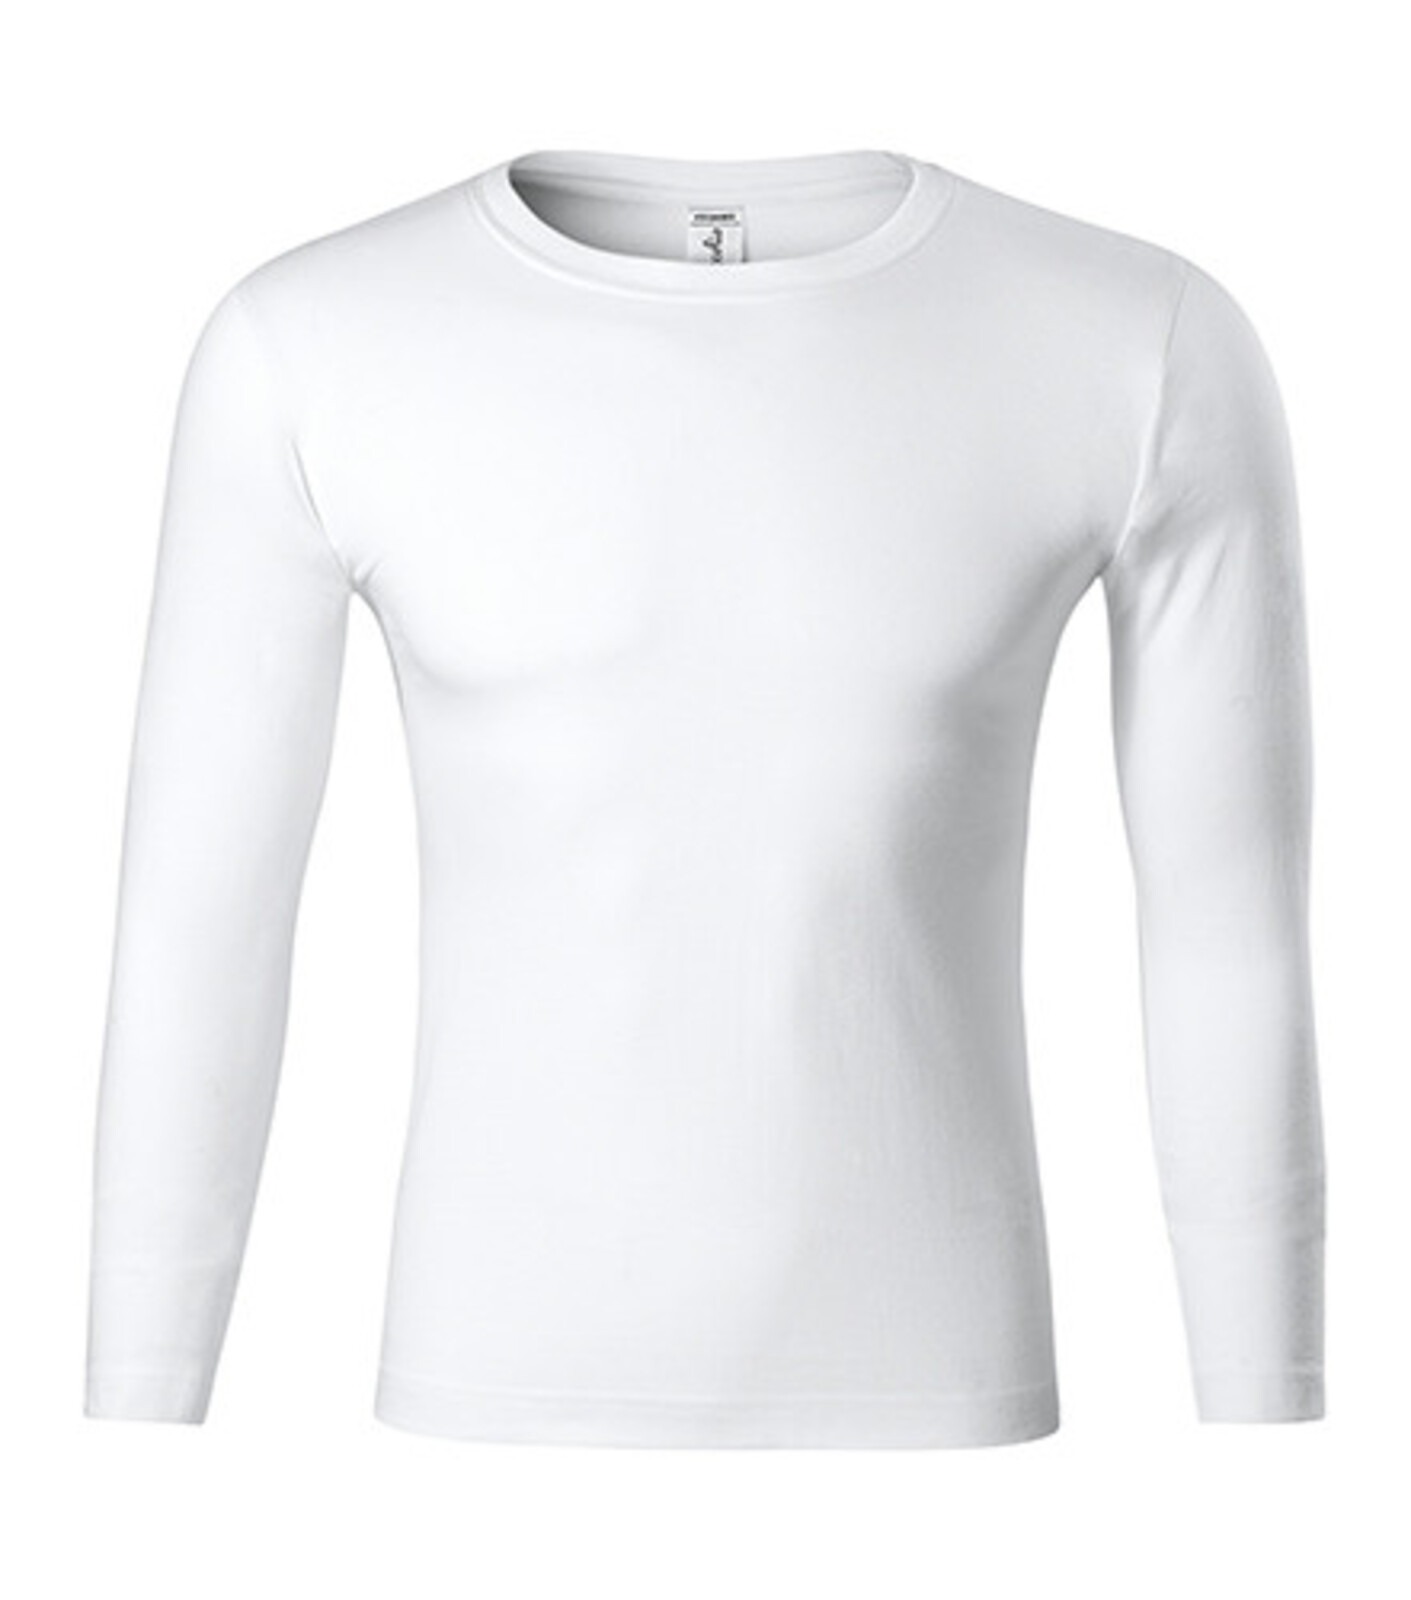 Unisex tričko s dlhým rukávom Progress LS P75 - veľkosť: XL, farba: biela